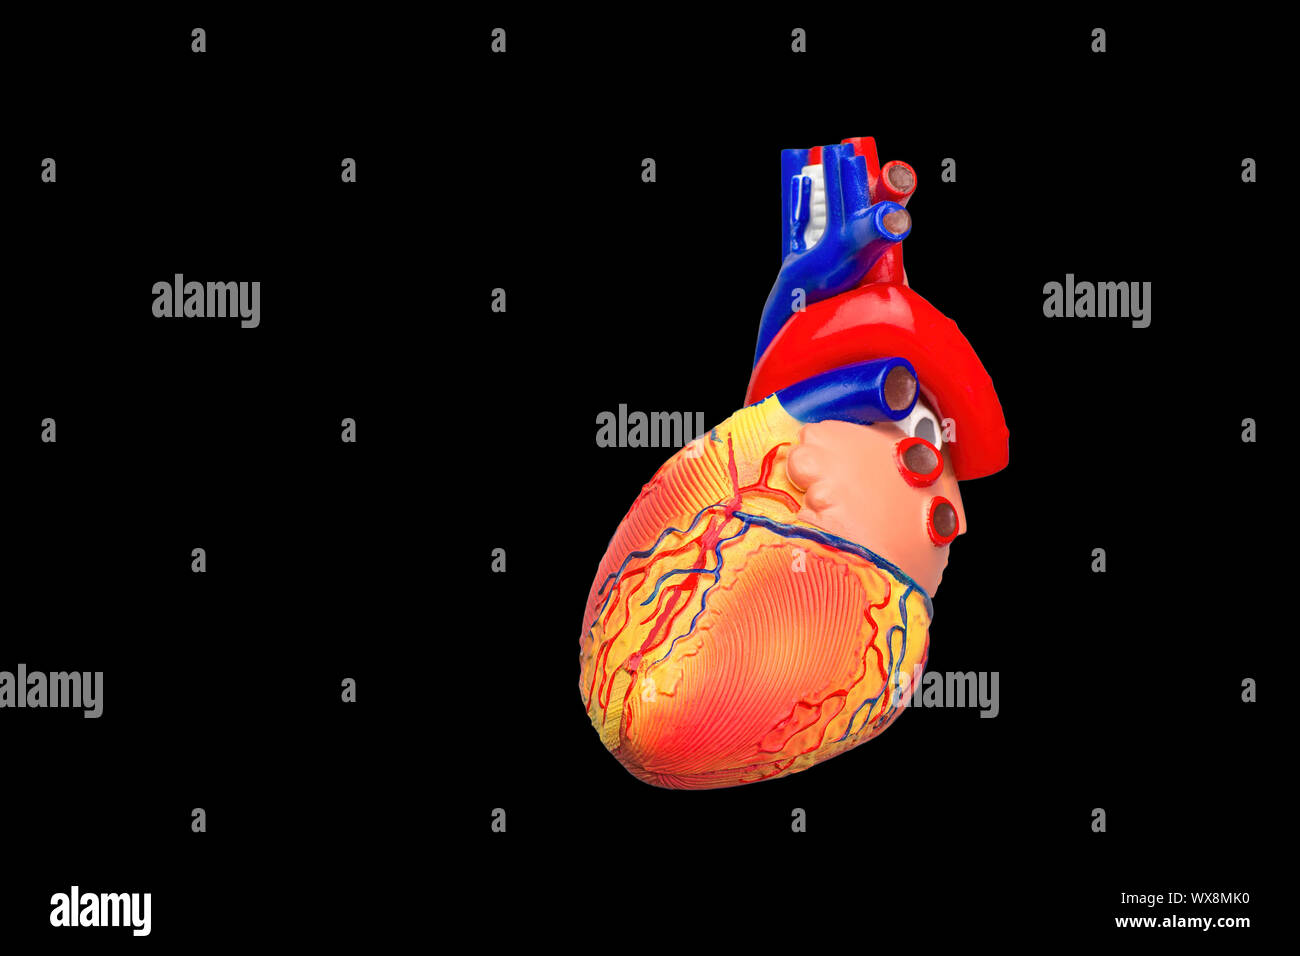 Modèle coeur humain colorés sur fond noir Banque D'Images